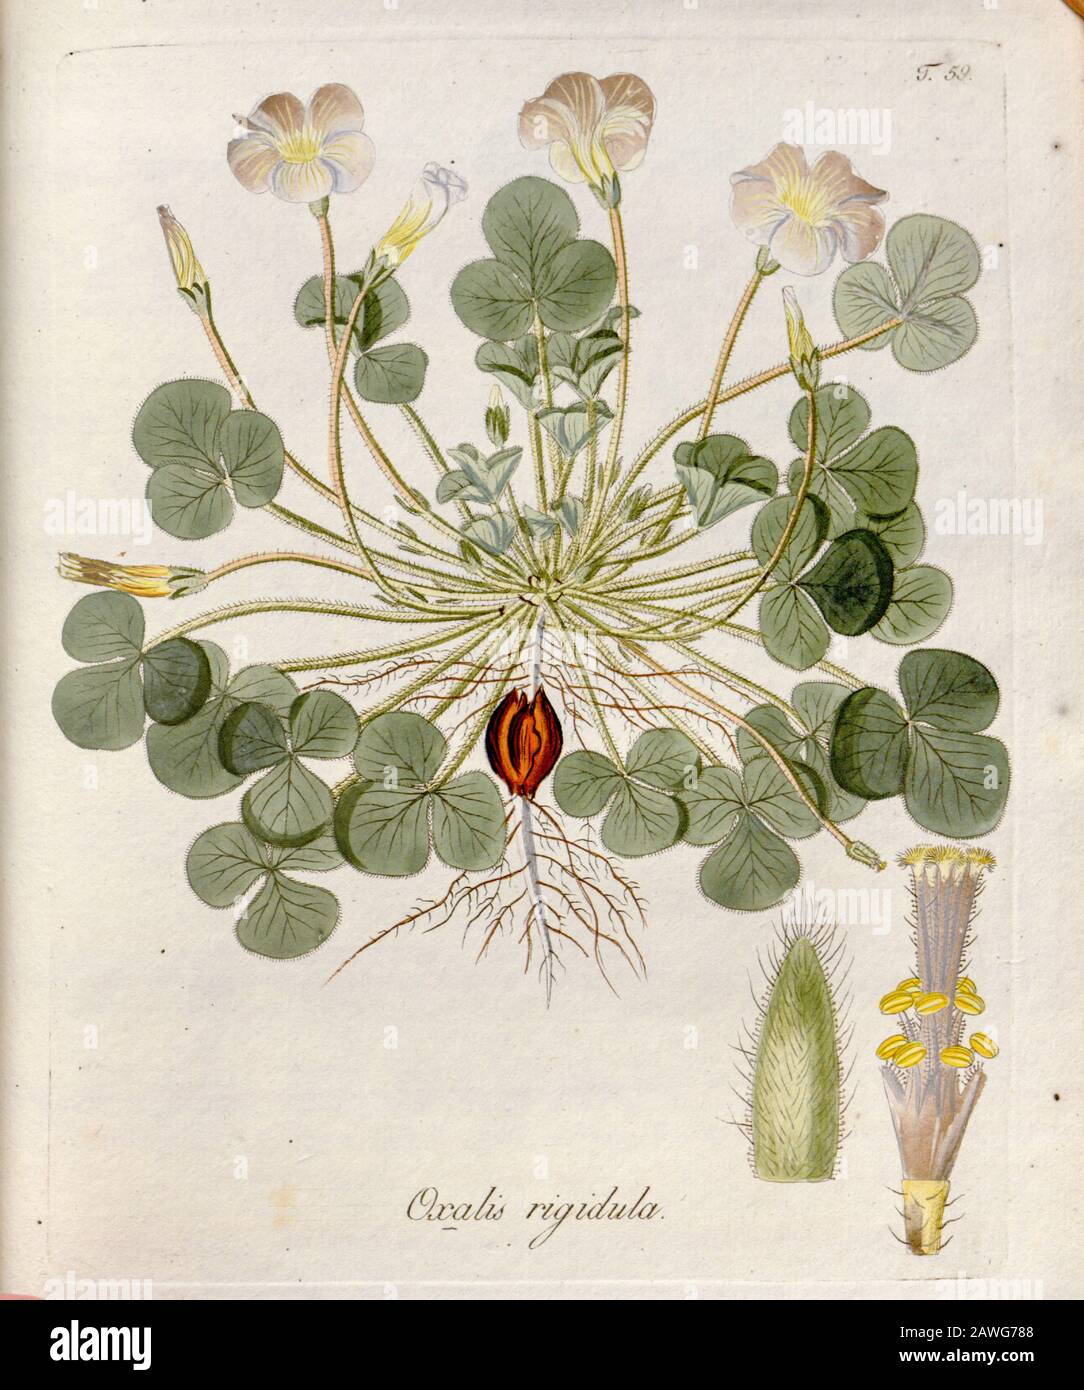 Woodsorrel (Oxalis rigidula). Illustration from 'Oxalis Monographia iconibus illustrata' by Nikolaus Joseph Jacquin (1797-1798). published 1794 Stock Photo